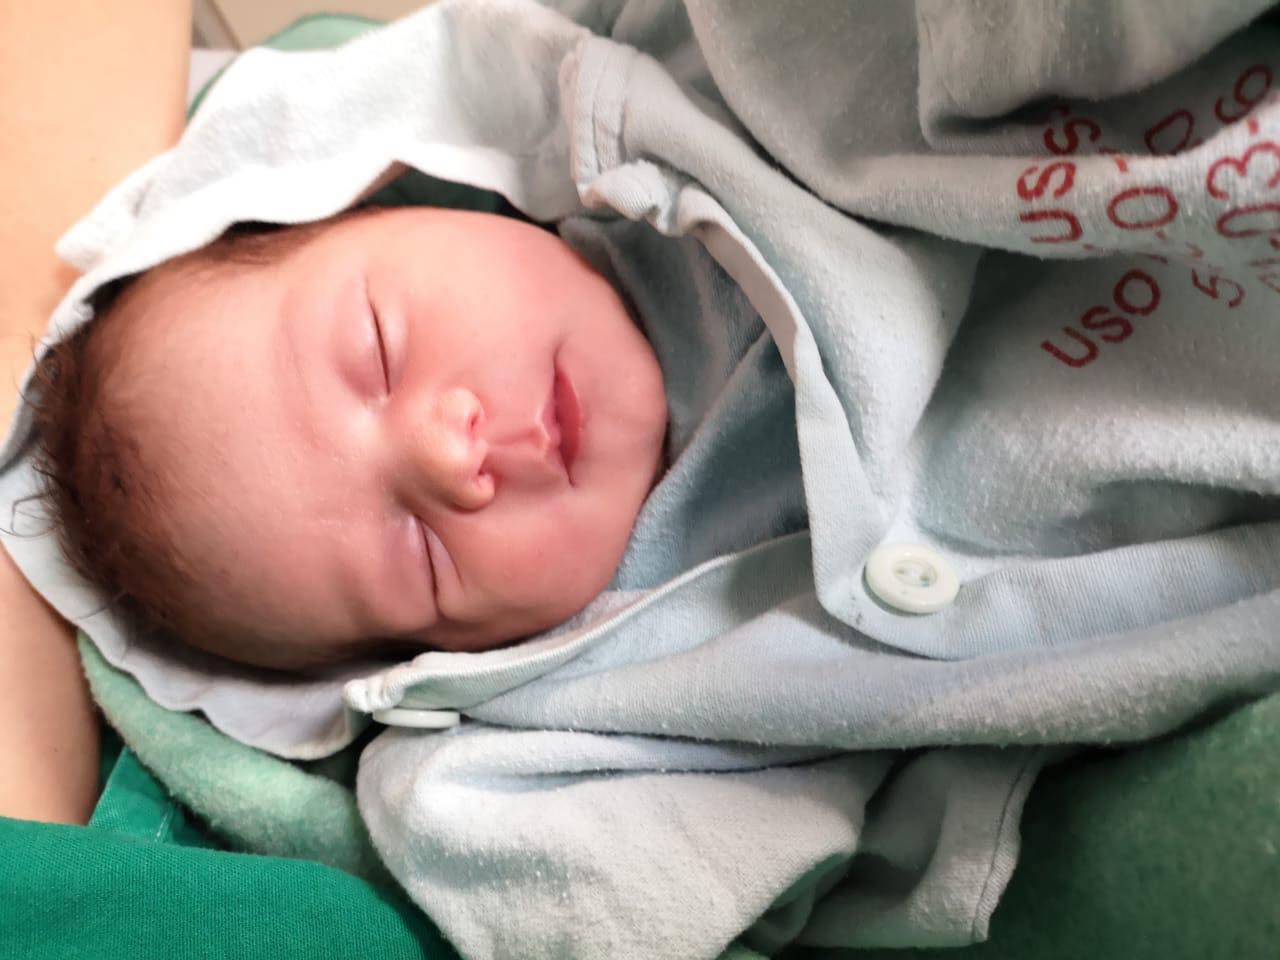 Este jueves nació Abby, la tercera bebé concebida por la técnica “in vitro” en la CCSS